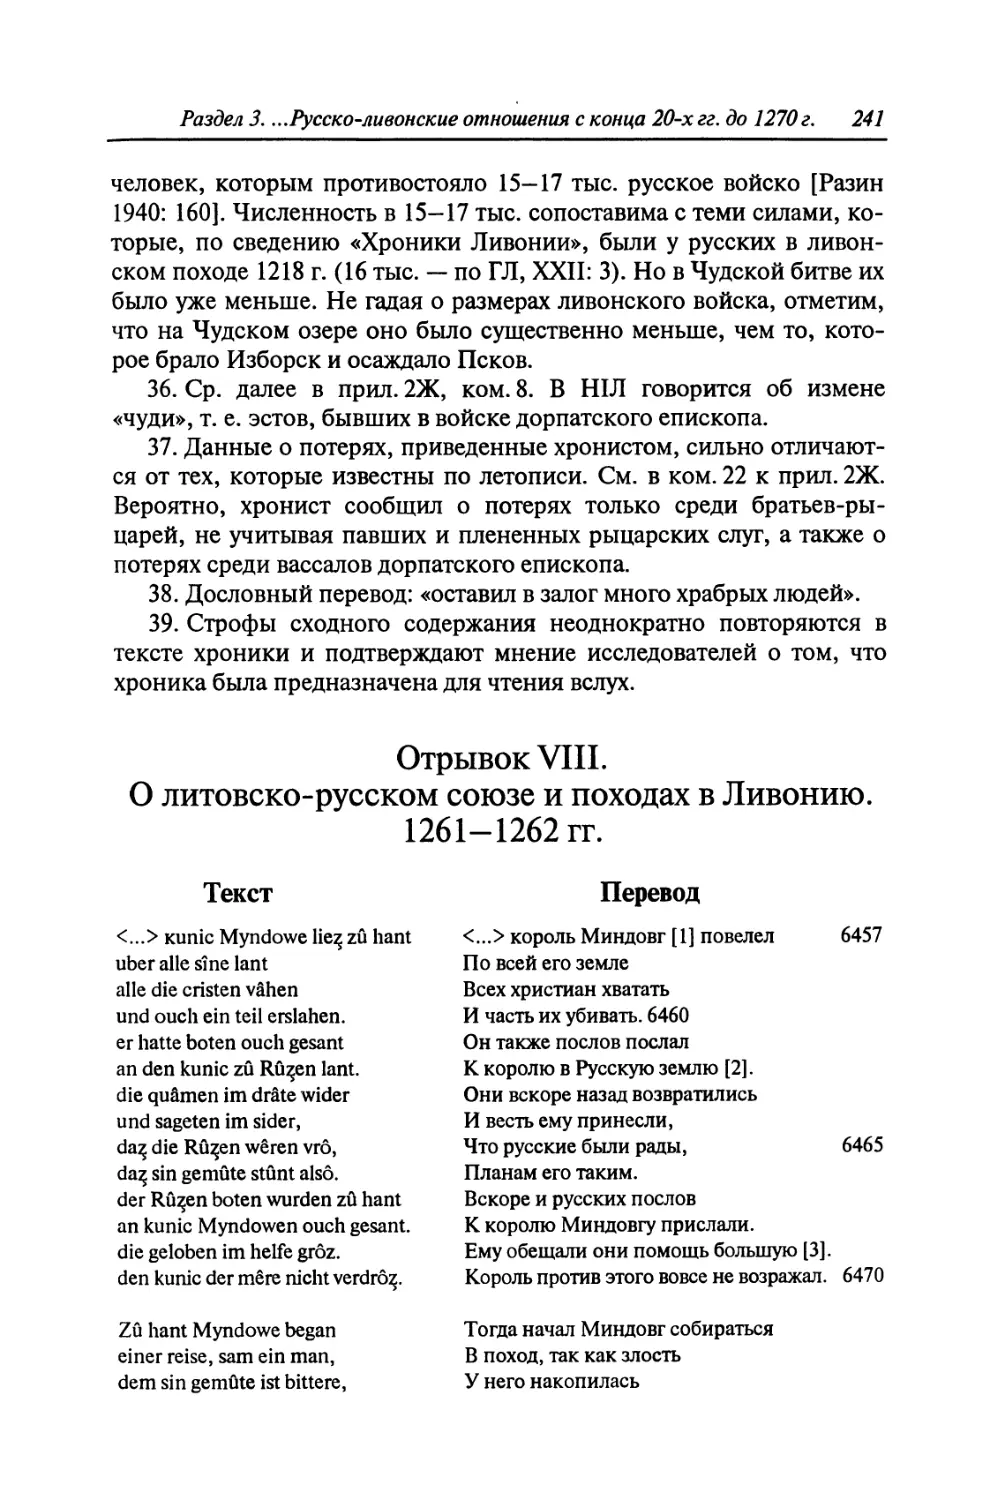 Отрывок VIII. О литовско-русском союзе и походах в Ливонию. 1261-1262 гг.